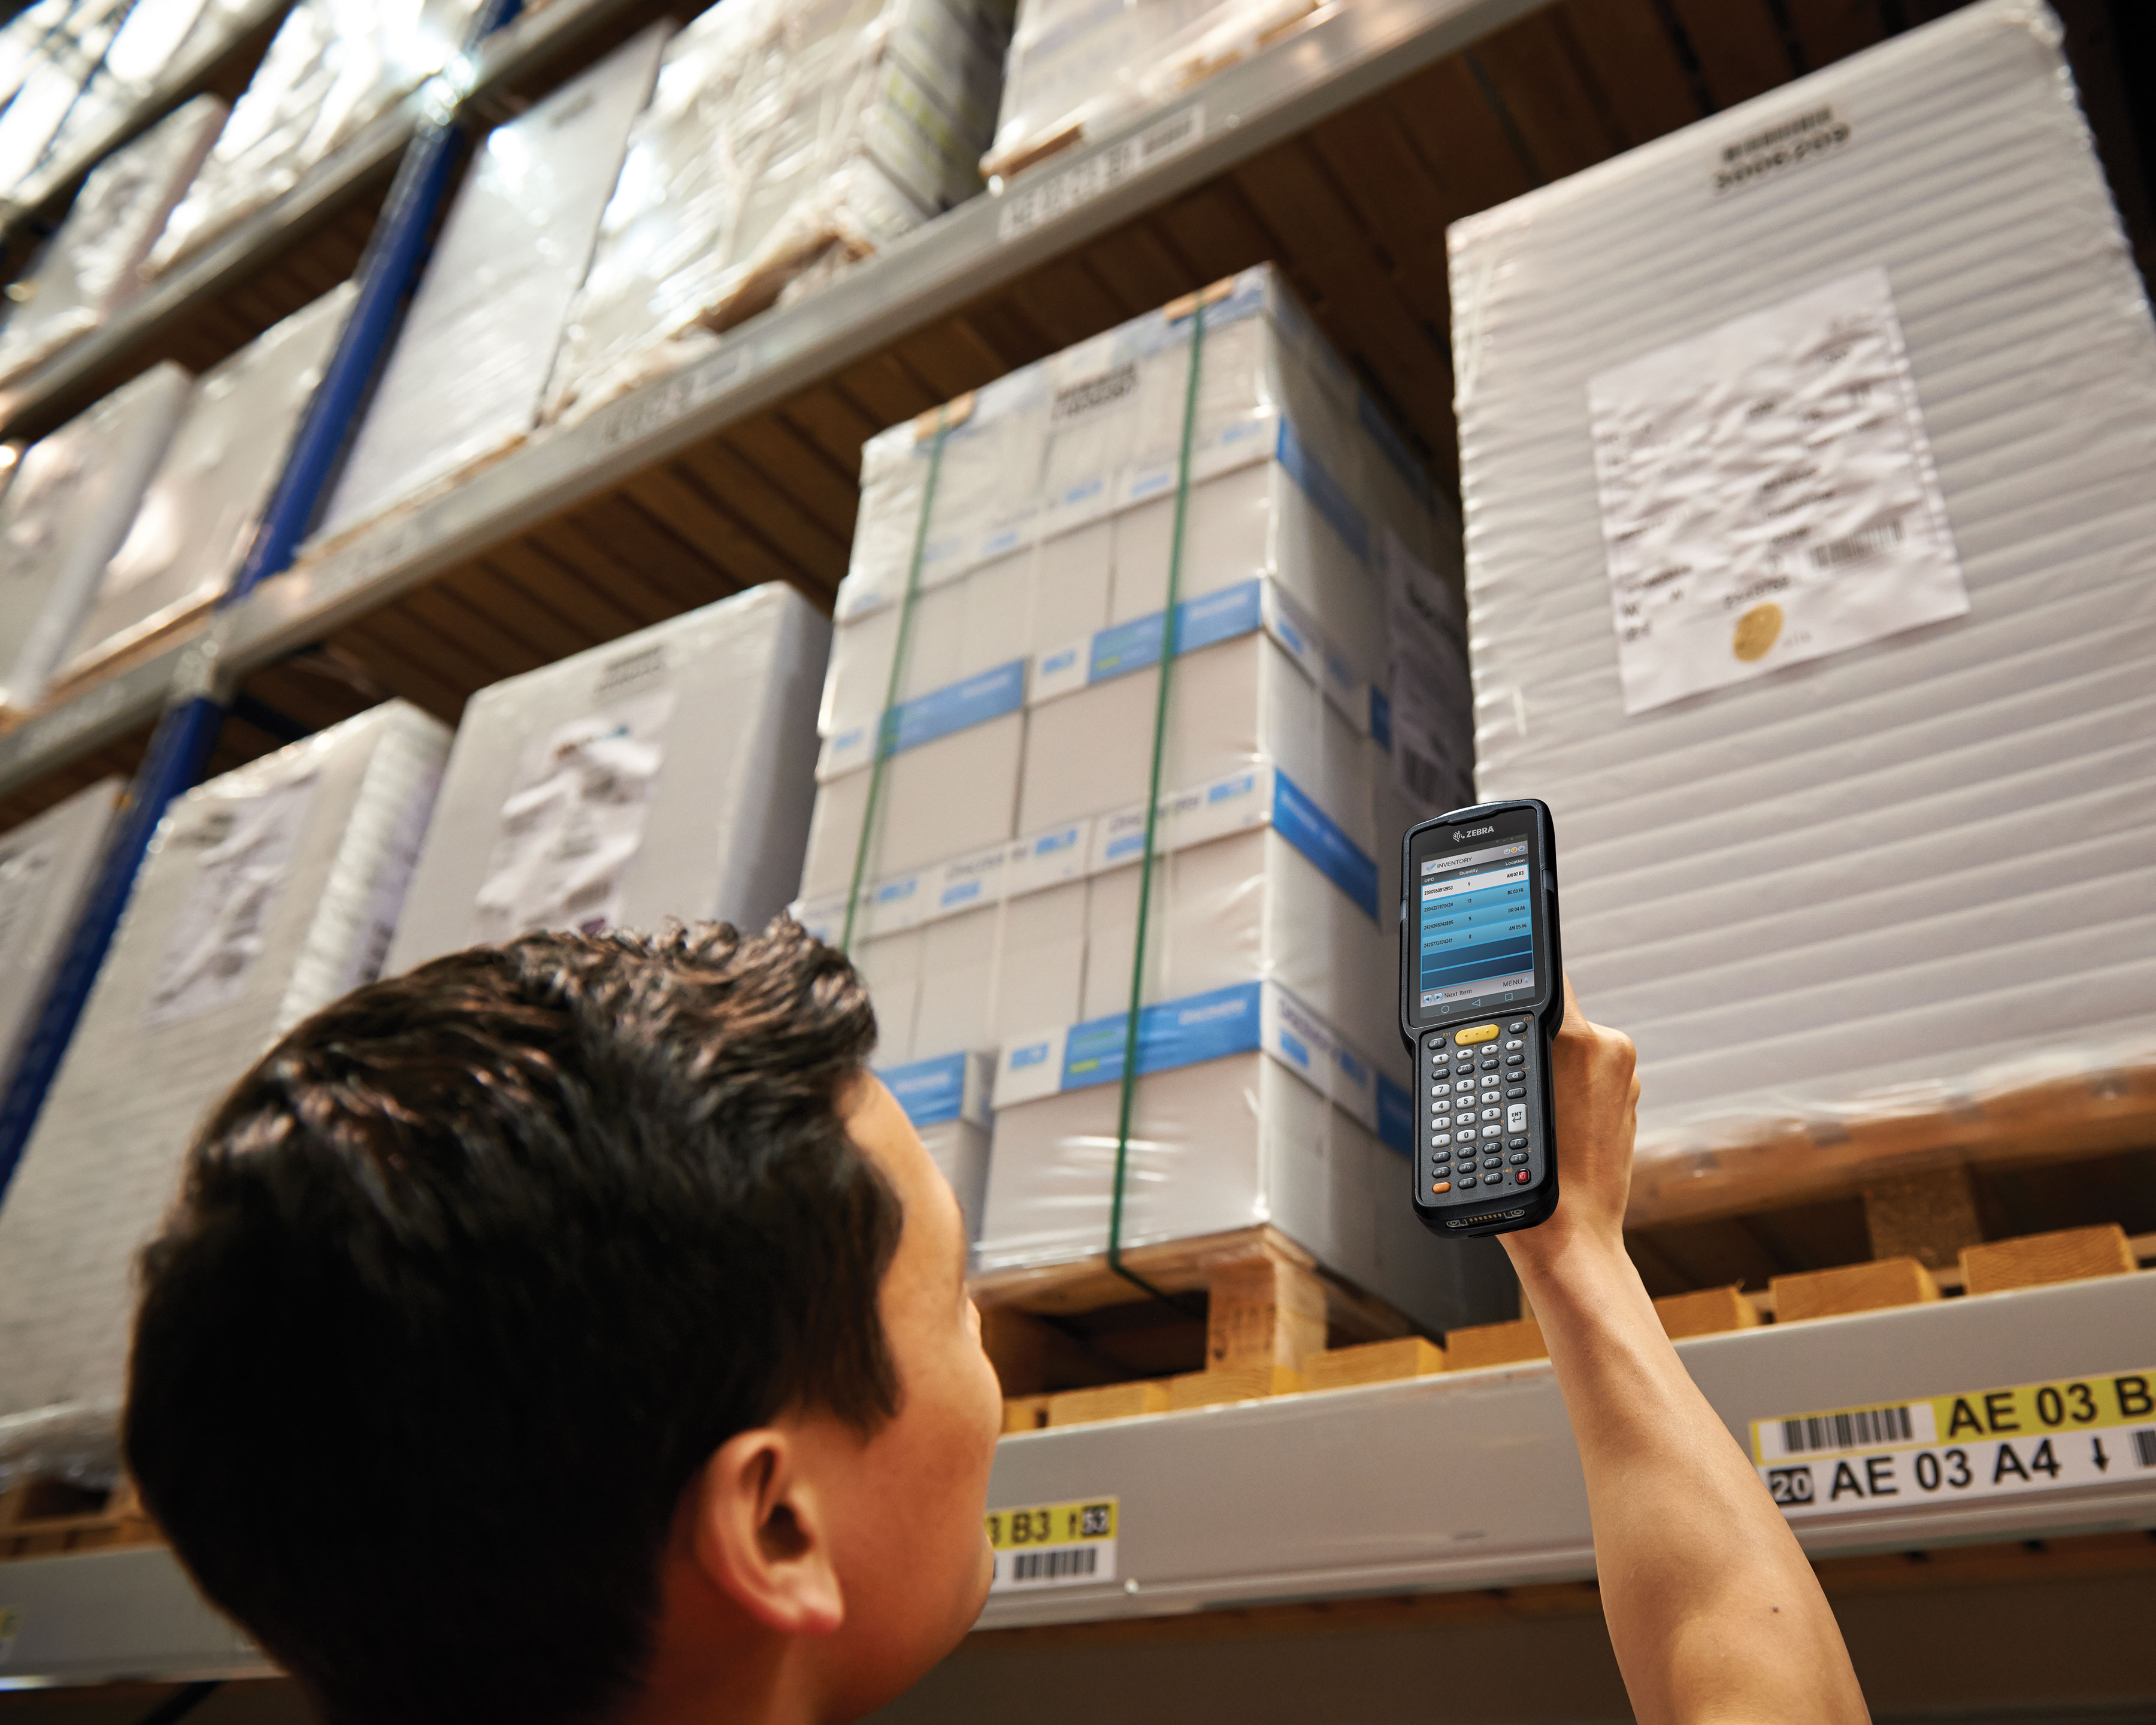 Warehouse worker uses Zebra MC3300 handheld computer gun pistol for long range scanning of boxes on shelves above